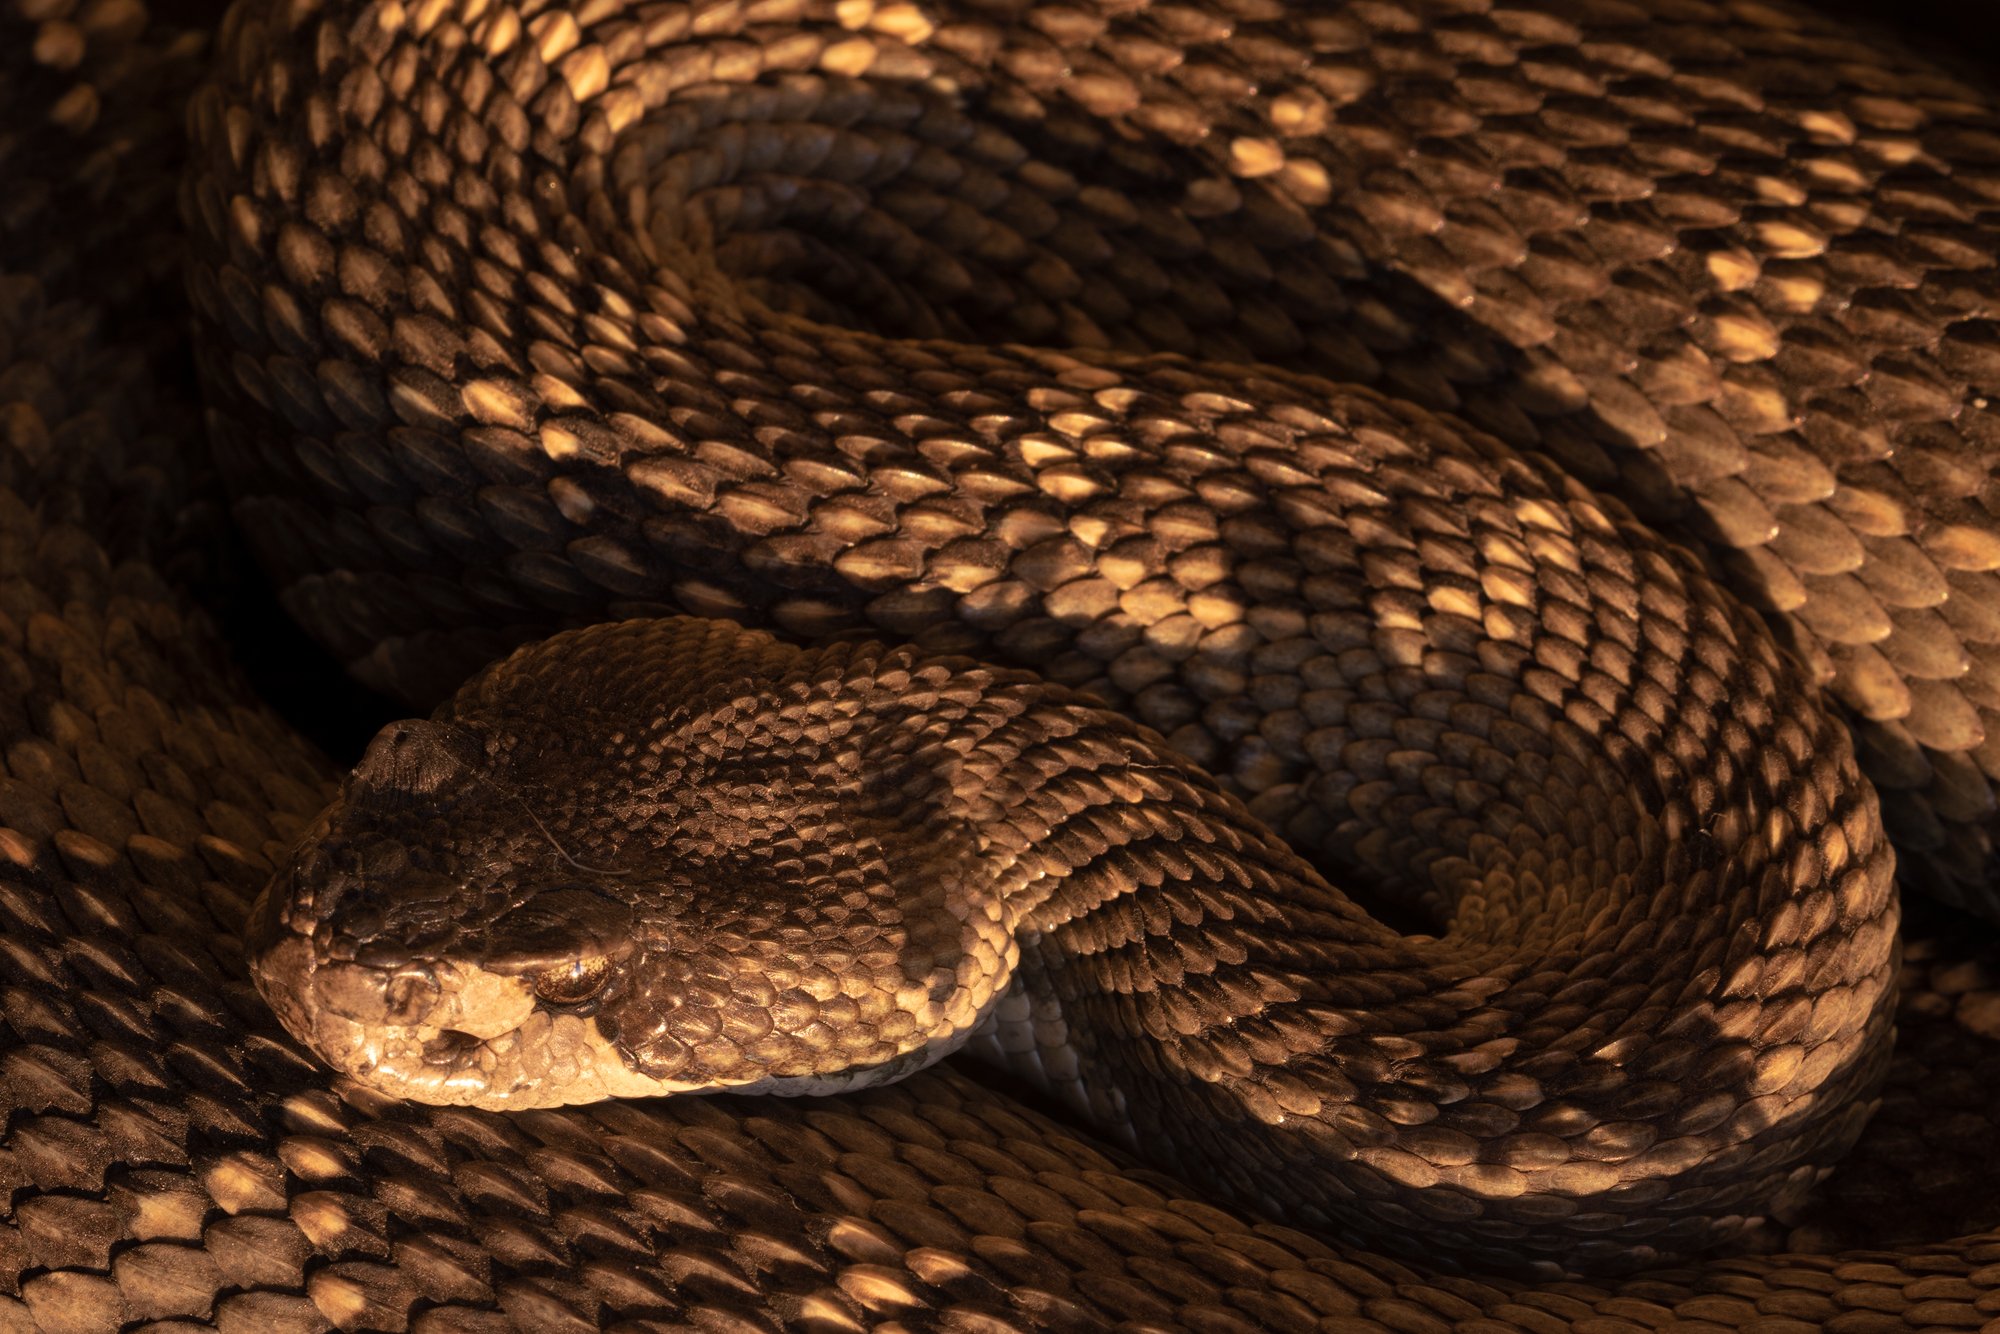 Rattlesnake_website.jpg